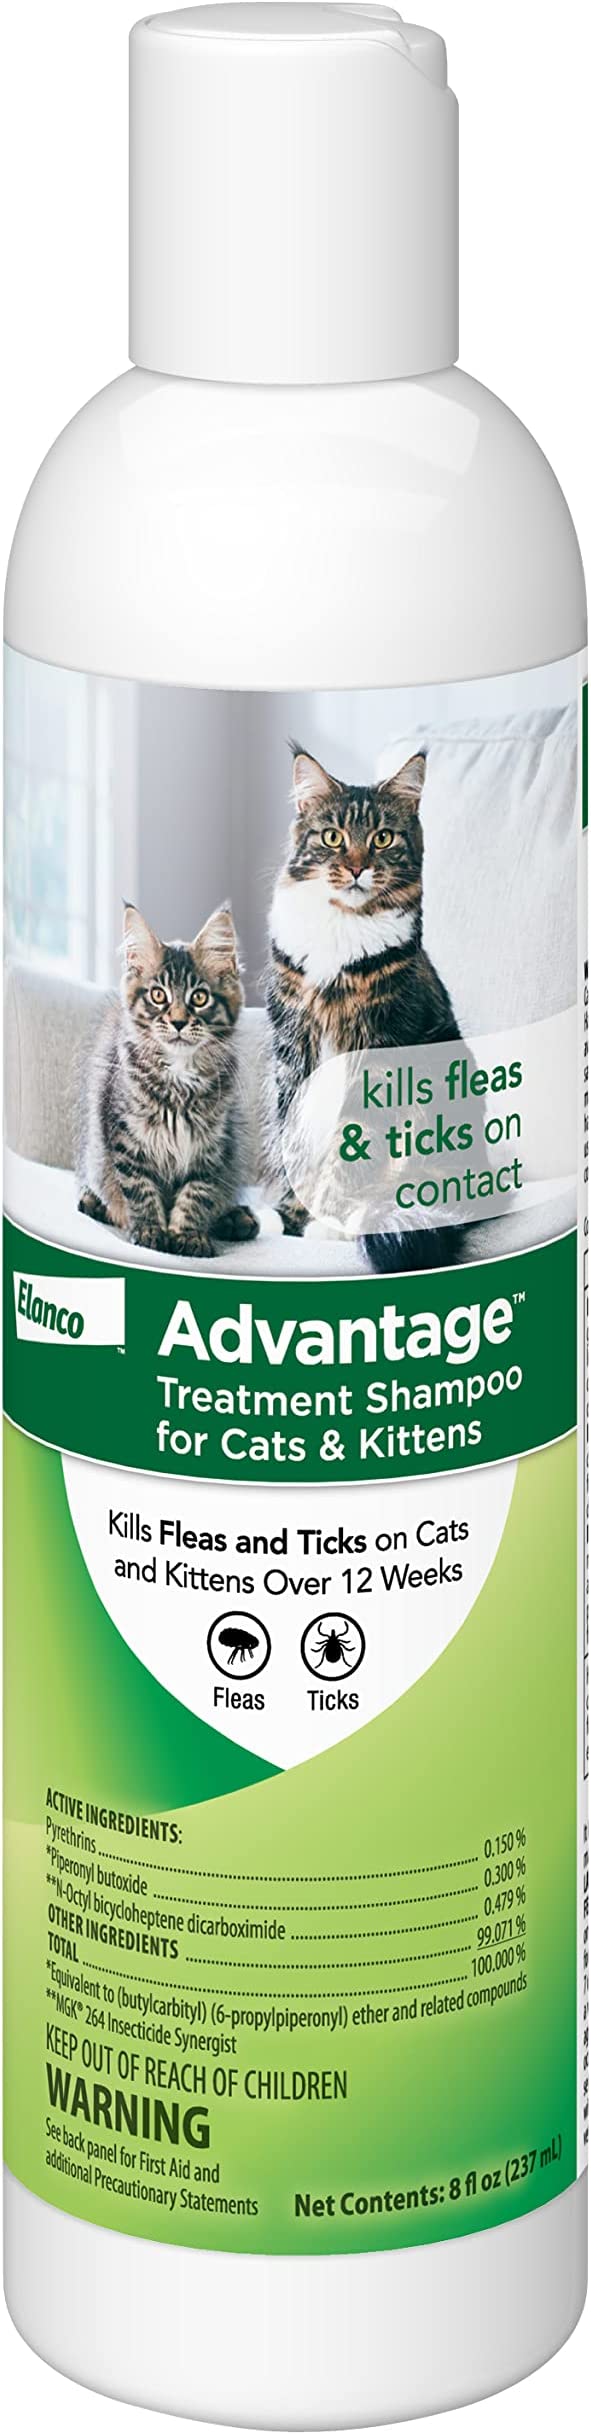 Elanco - Advantage Treatment Shampoo for Cats & Kittens